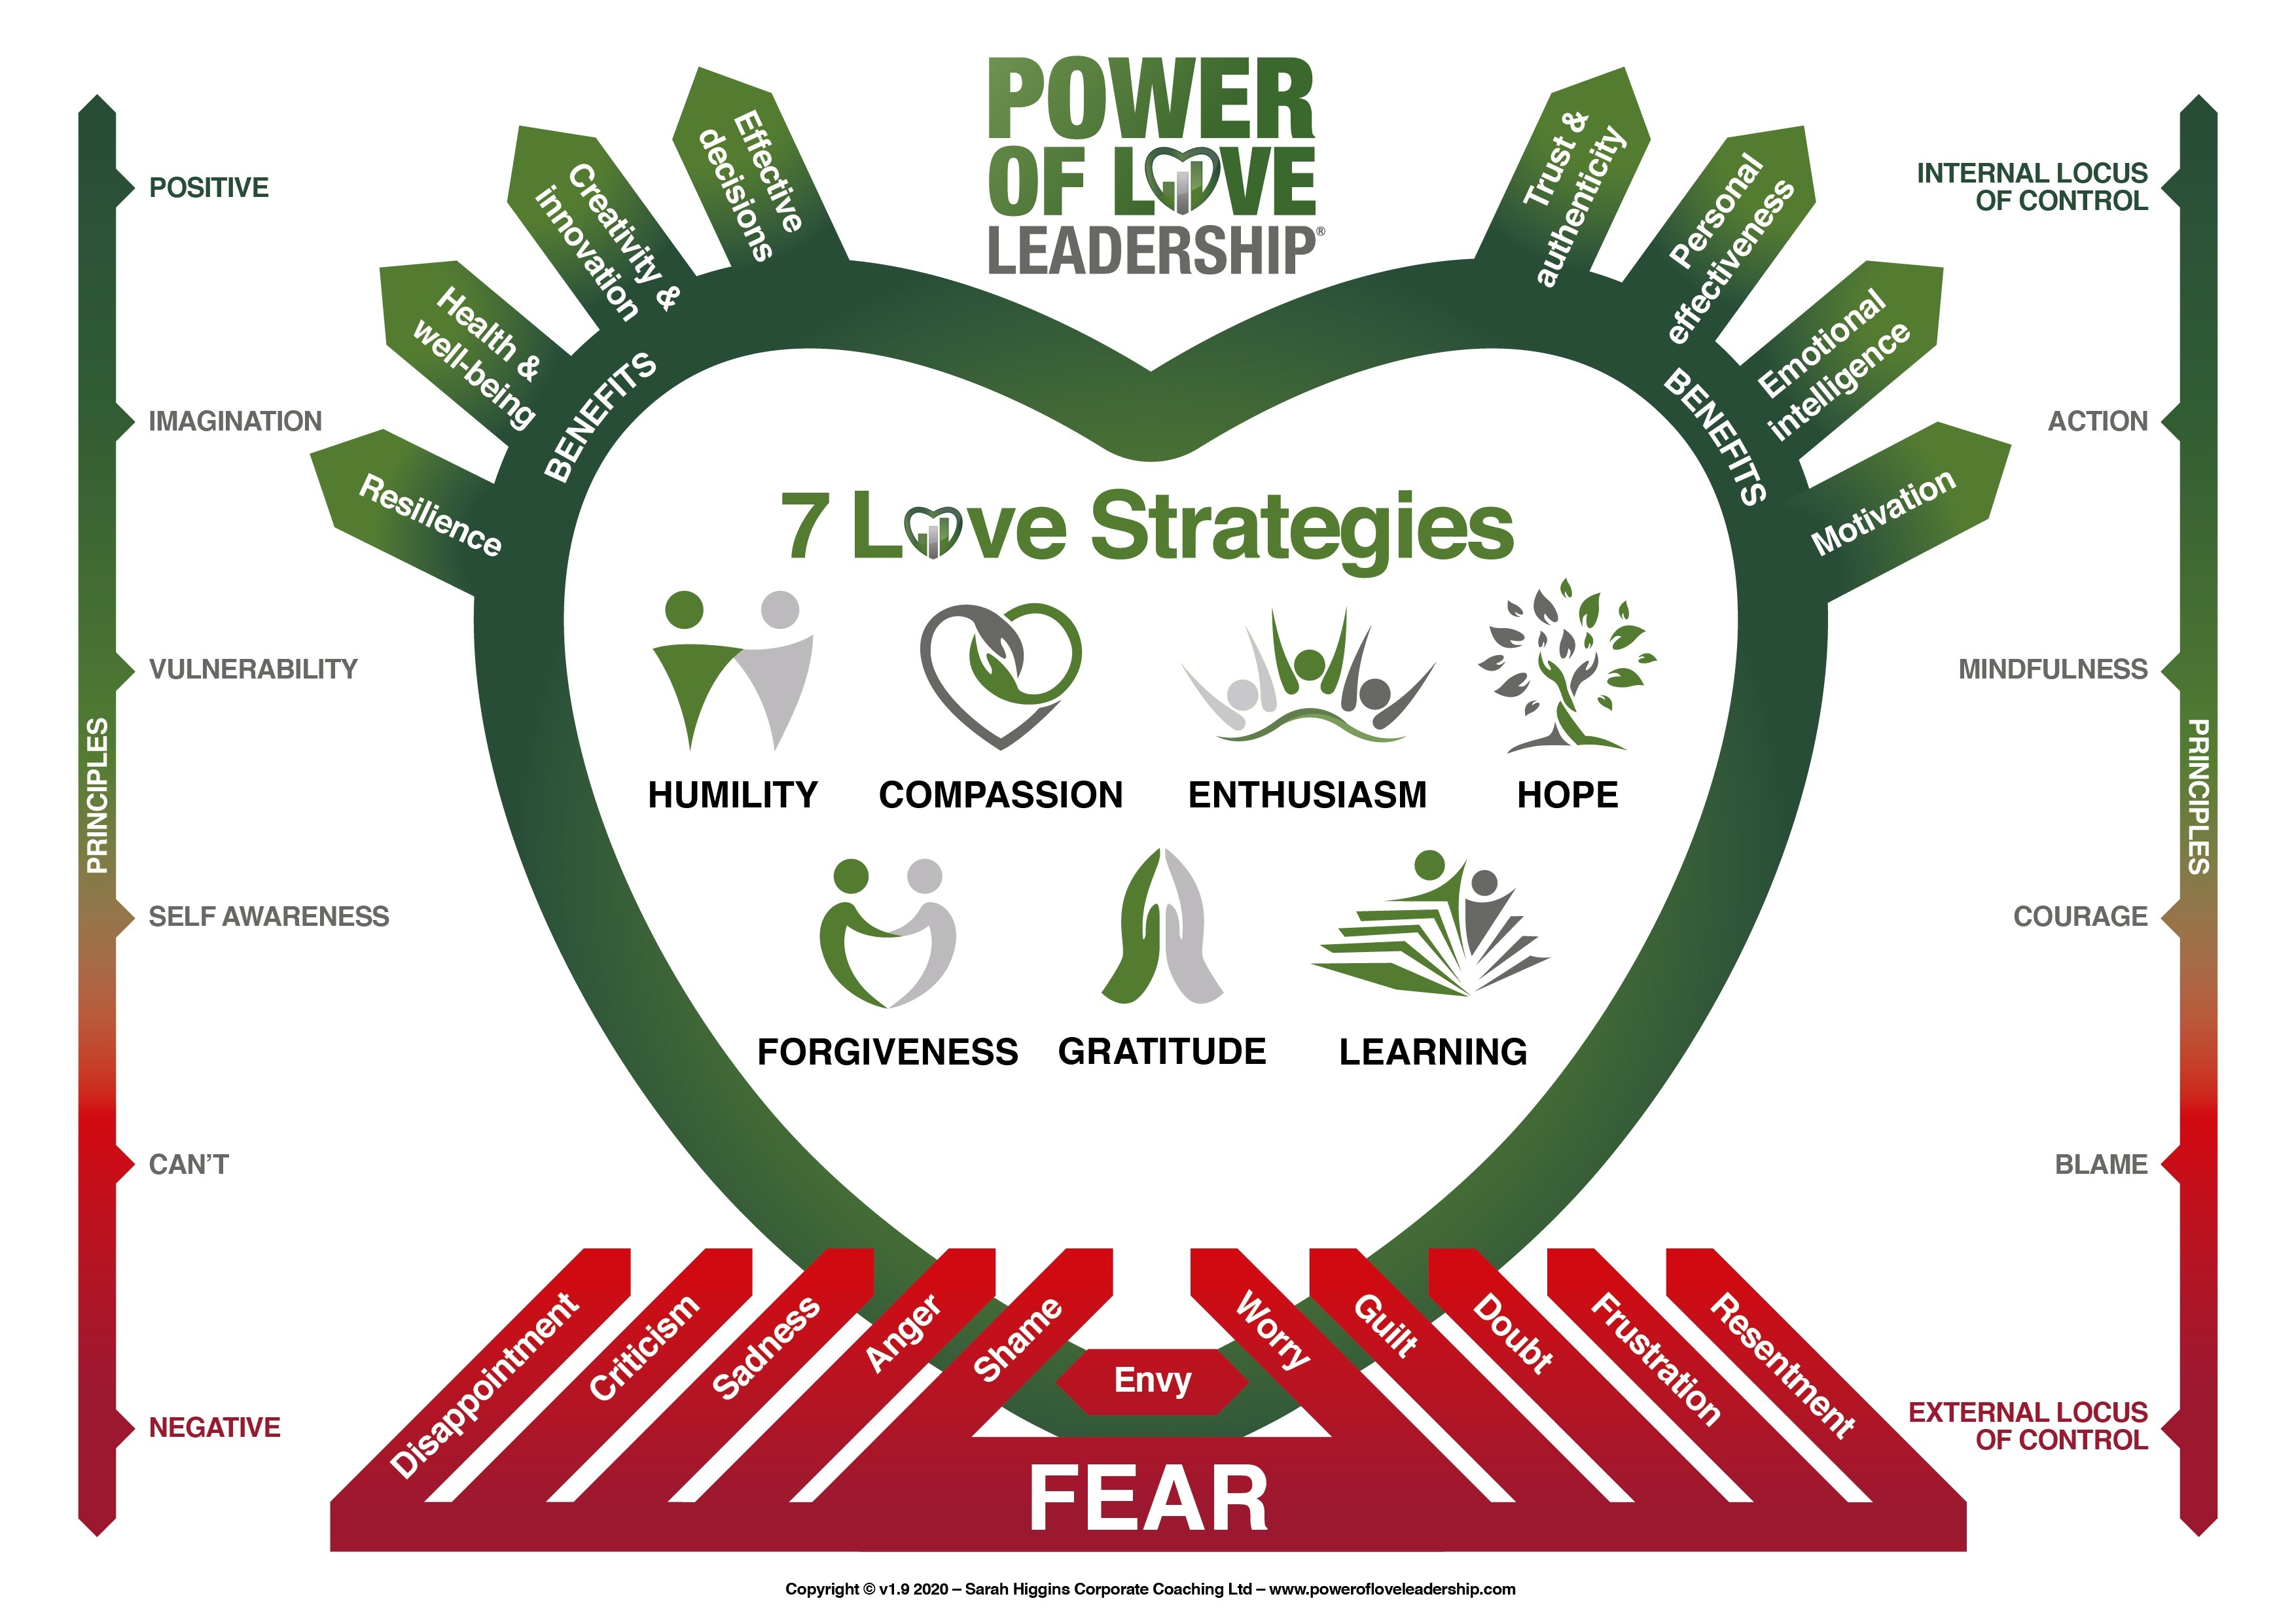 Power_of_Love_Leadership_Model_v37041i.jpg